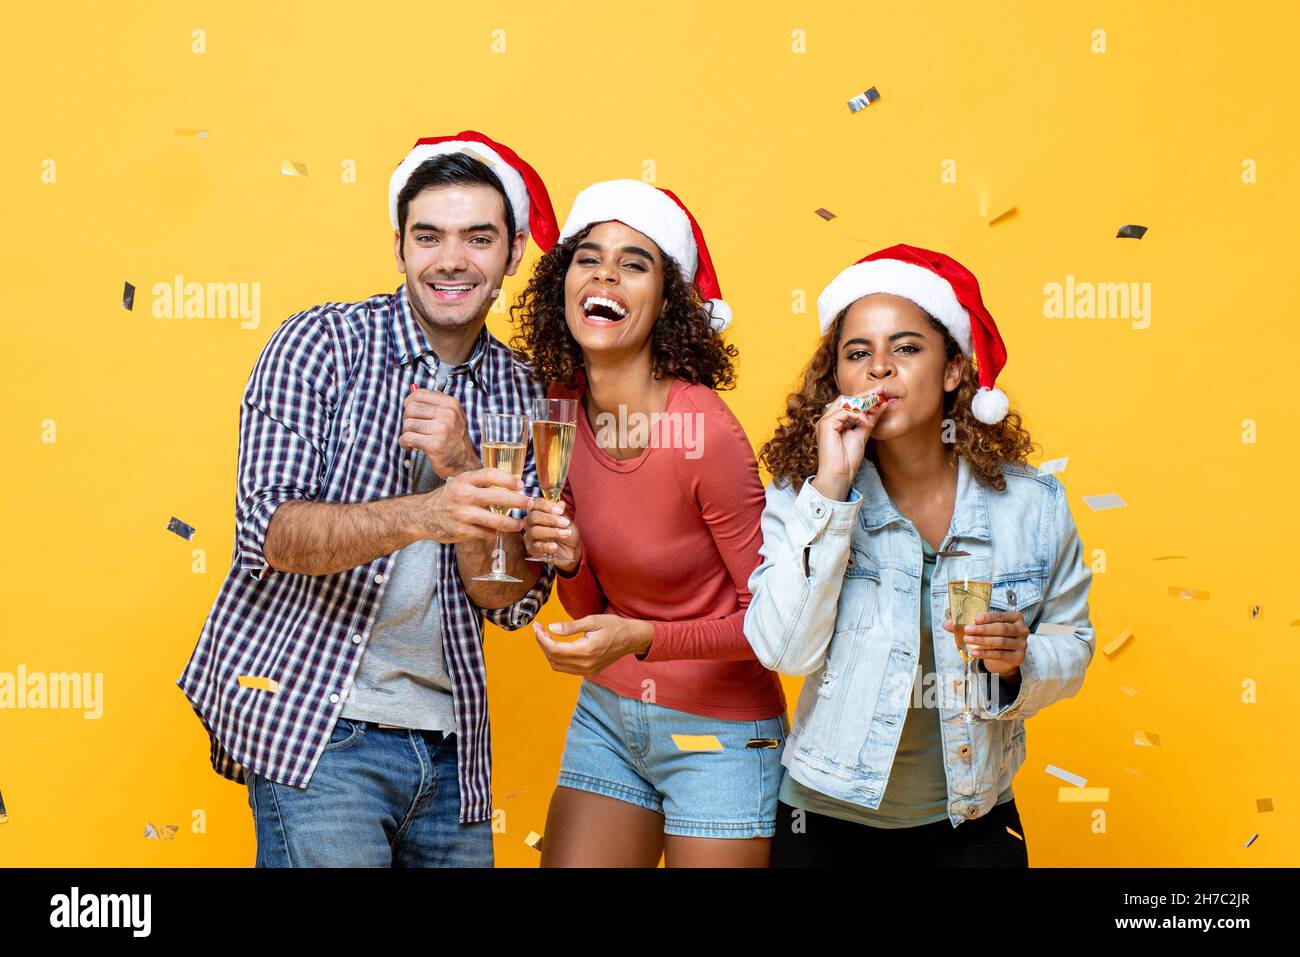 Ritratto del gruppo di amici allegri e variegati con champagne che festeggia il Natale su sfondo giallo dello studio con confetti Foto Stock